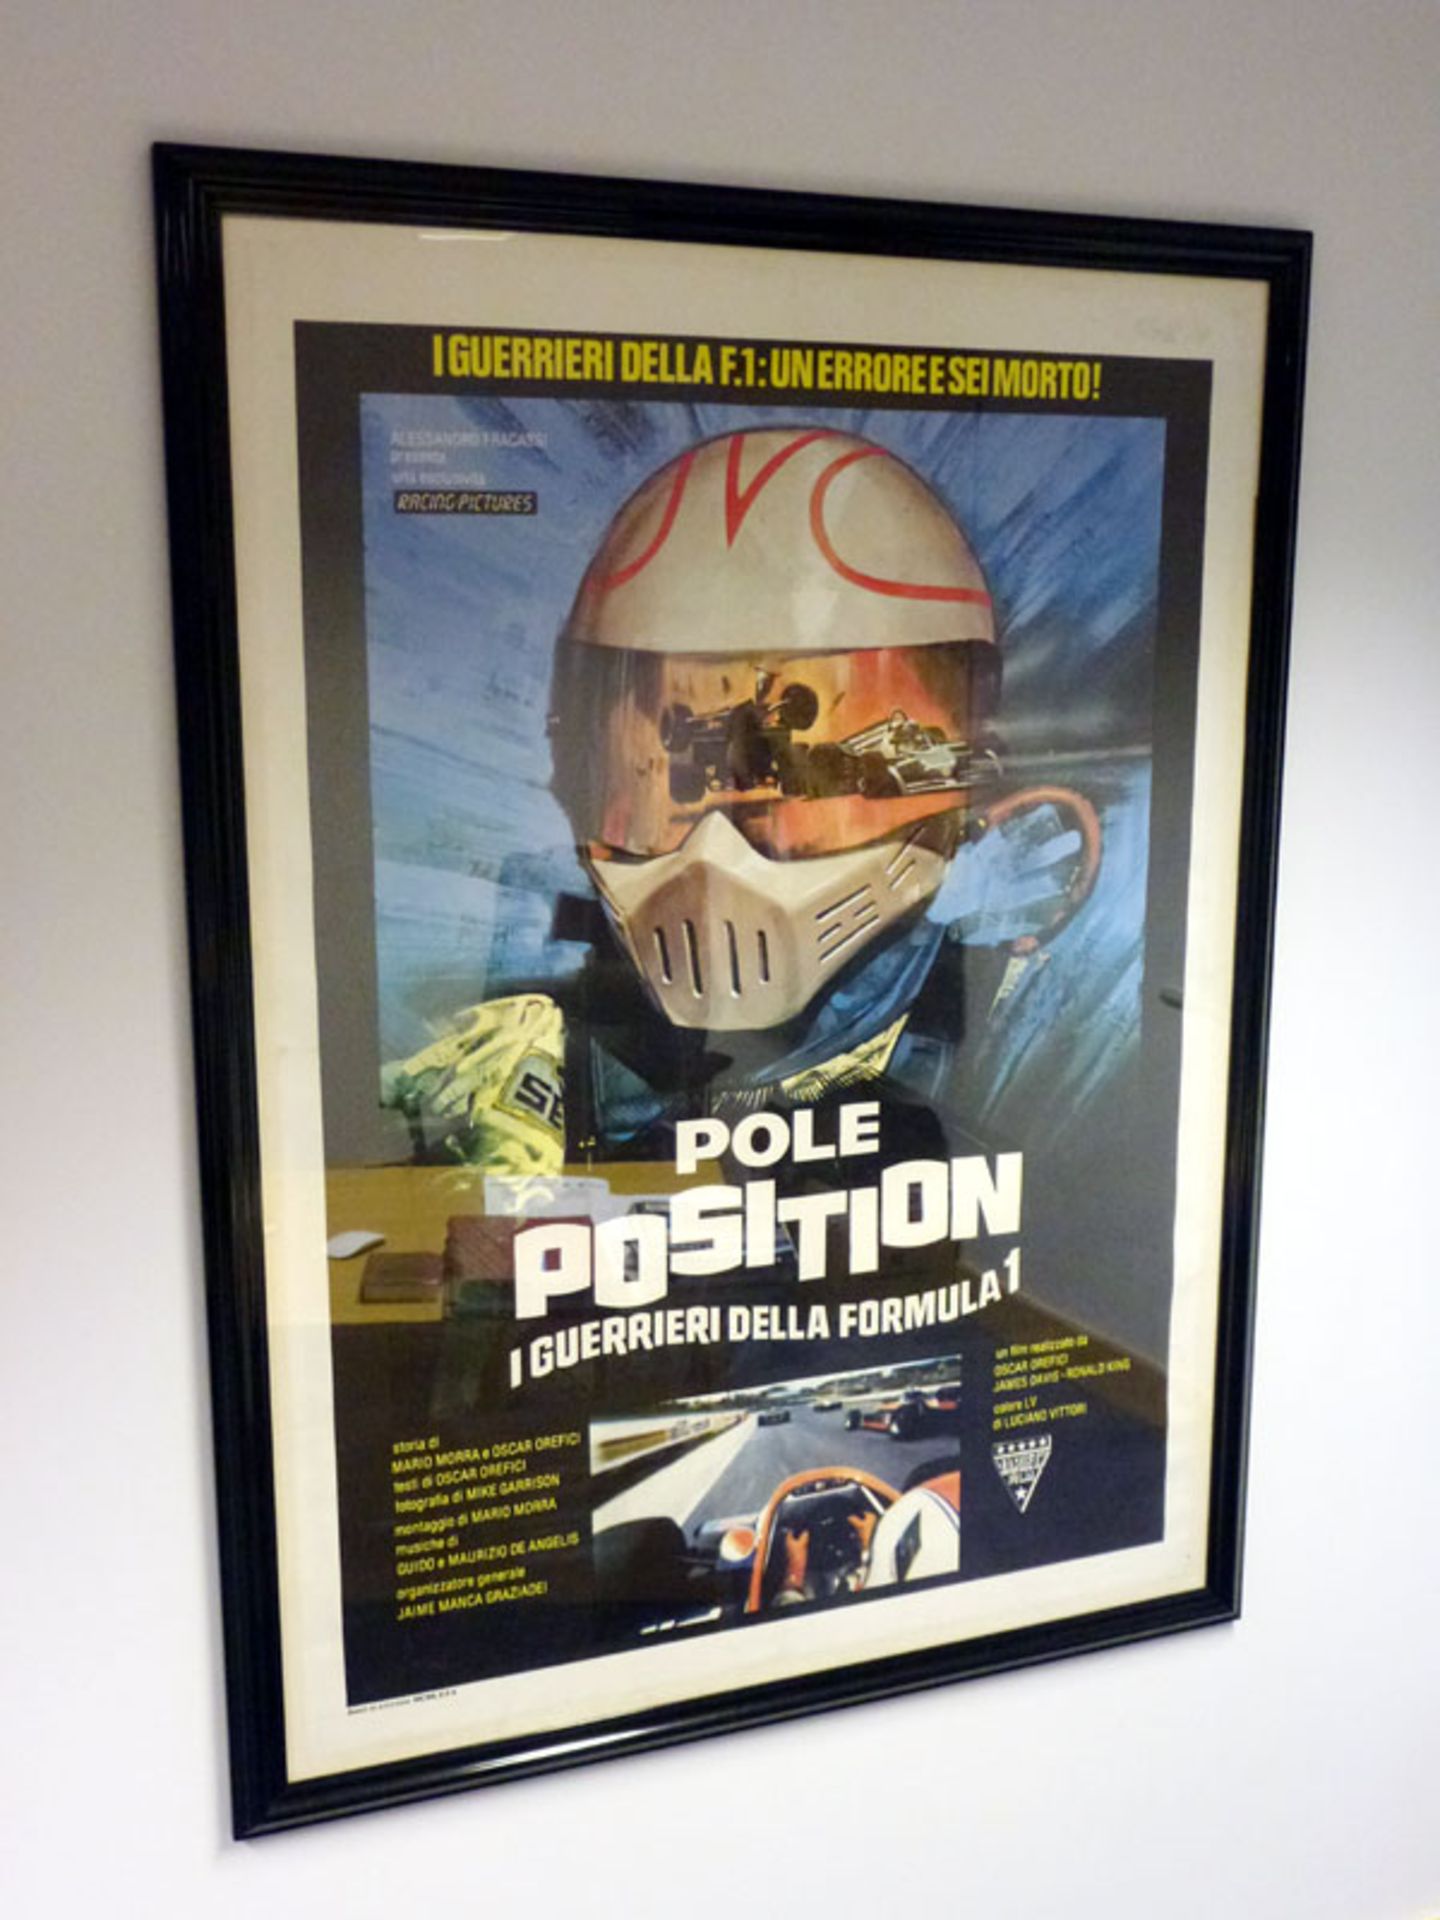 Framed/Glazed Large 'Pole Position' Movie Poster